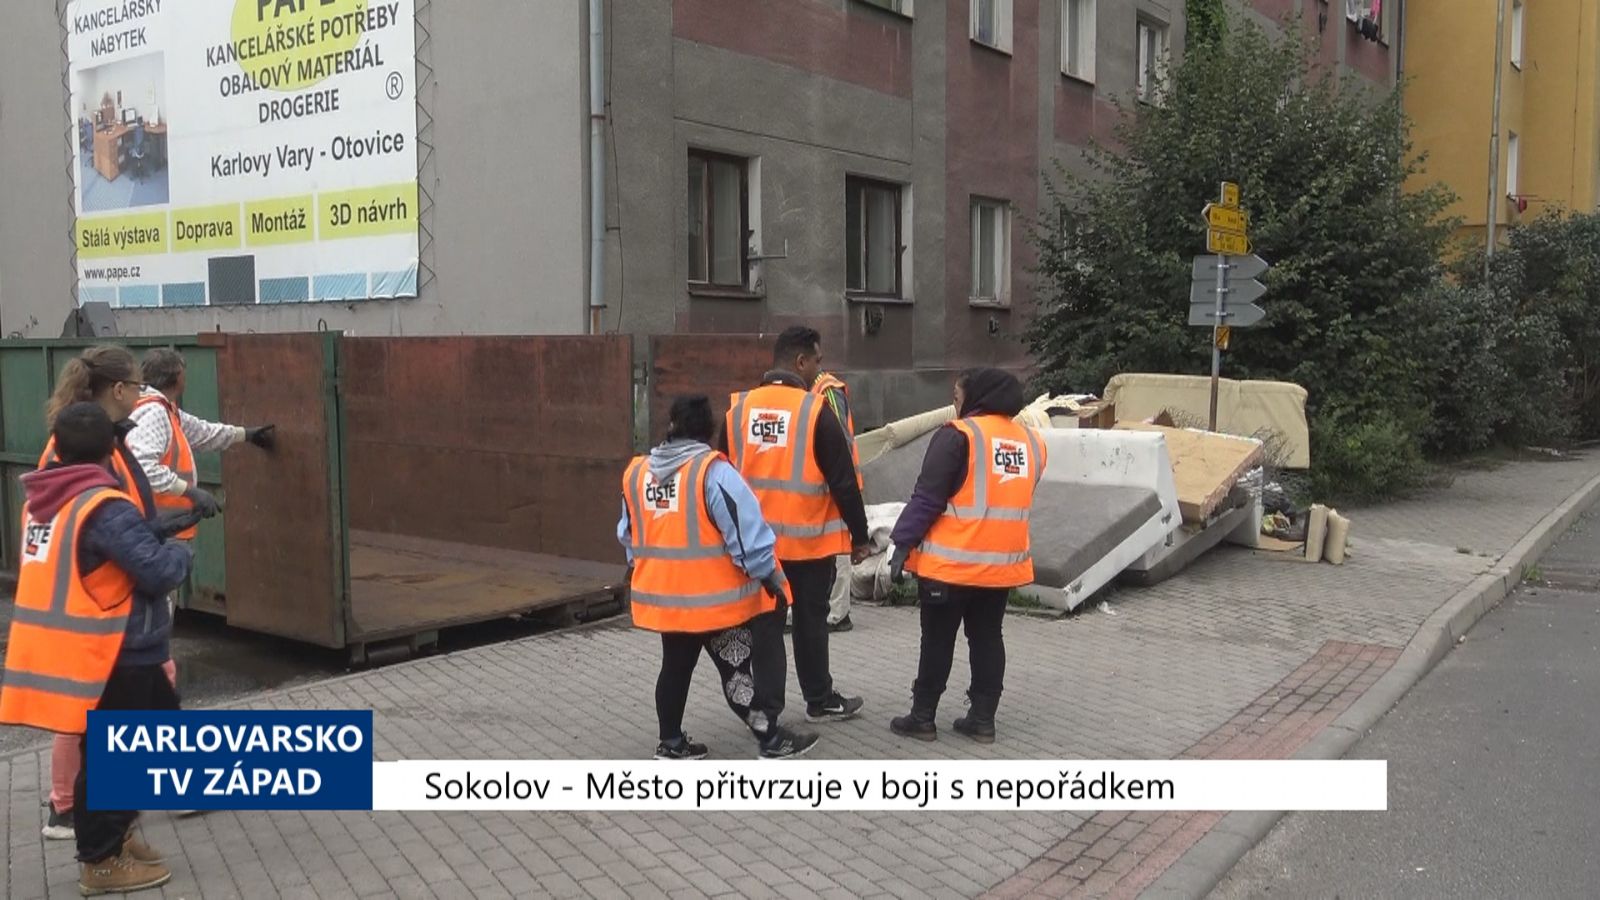 Sokolov: Město přitvrzuje v boji s nepořádkem (TV Západ)